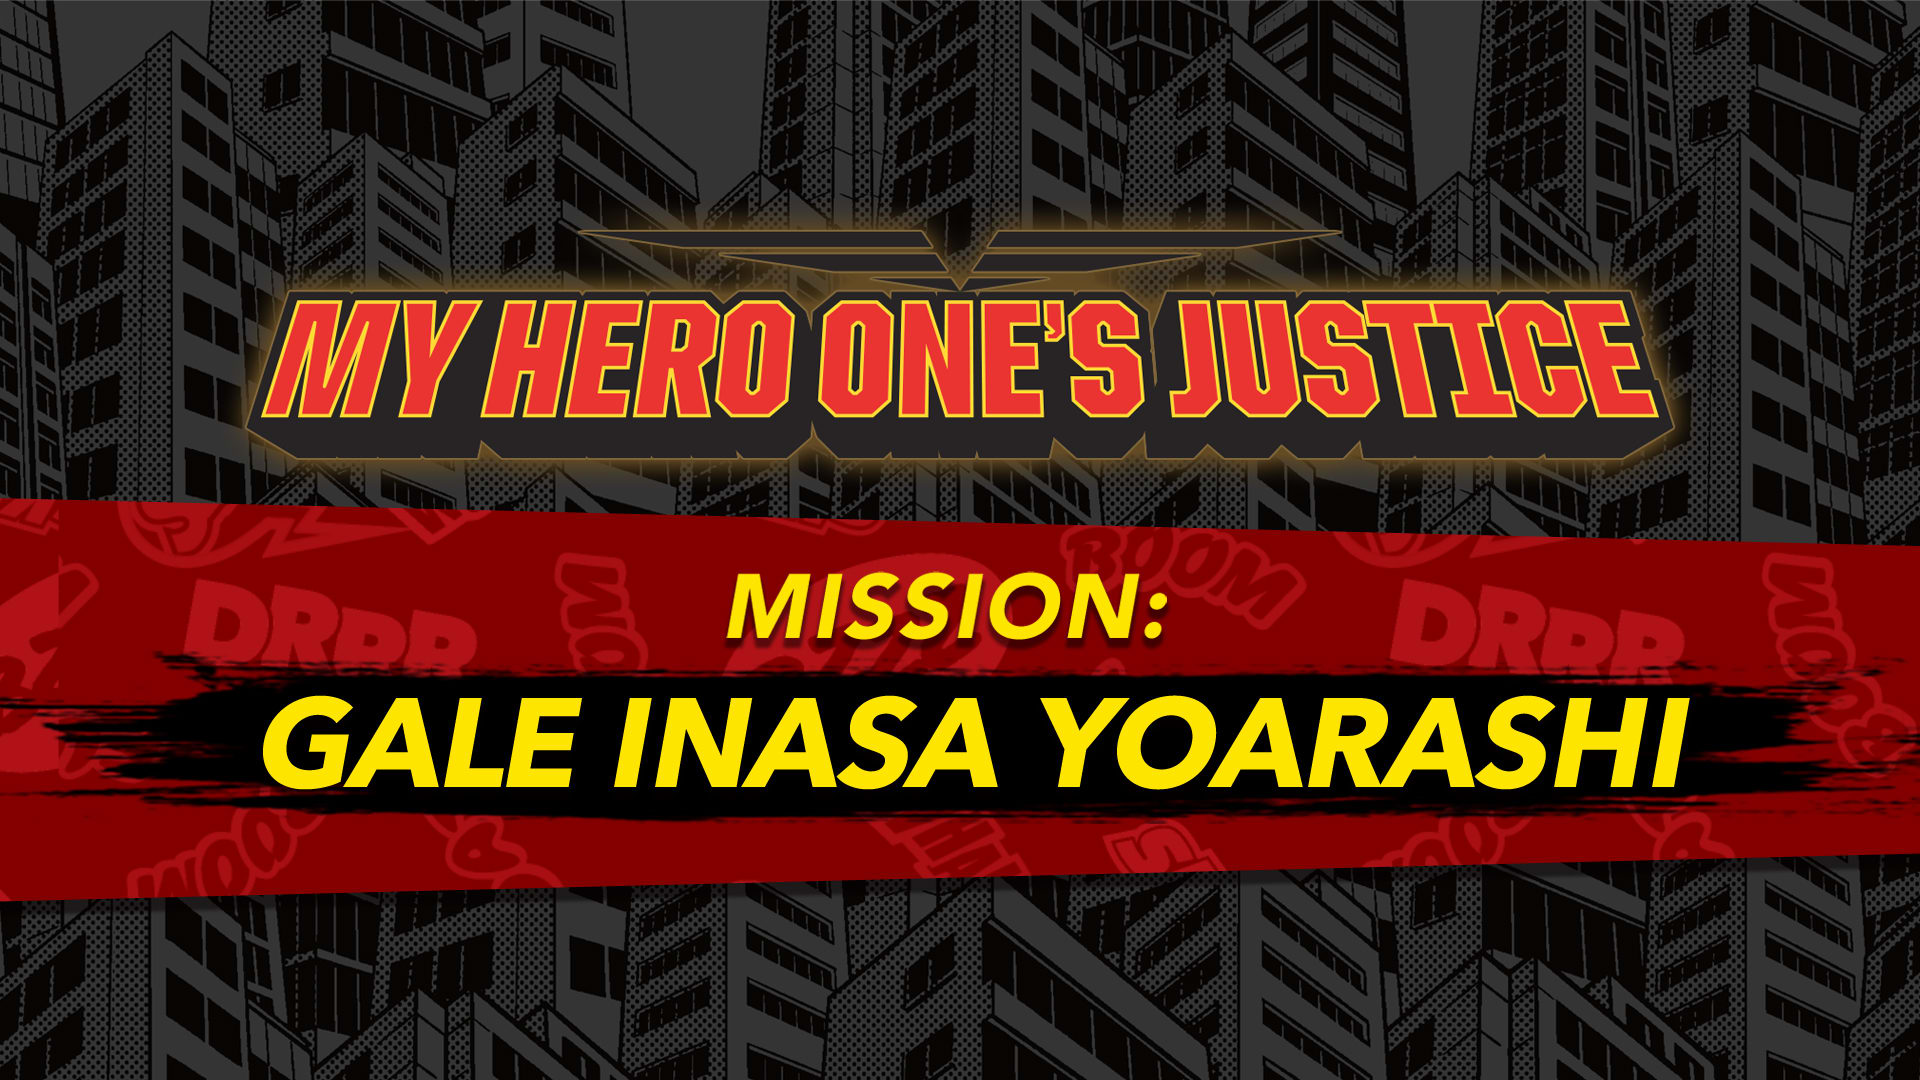 Misión de MY HERO ONE'S JUSTICE: Vendaval Inasa Yoarashi